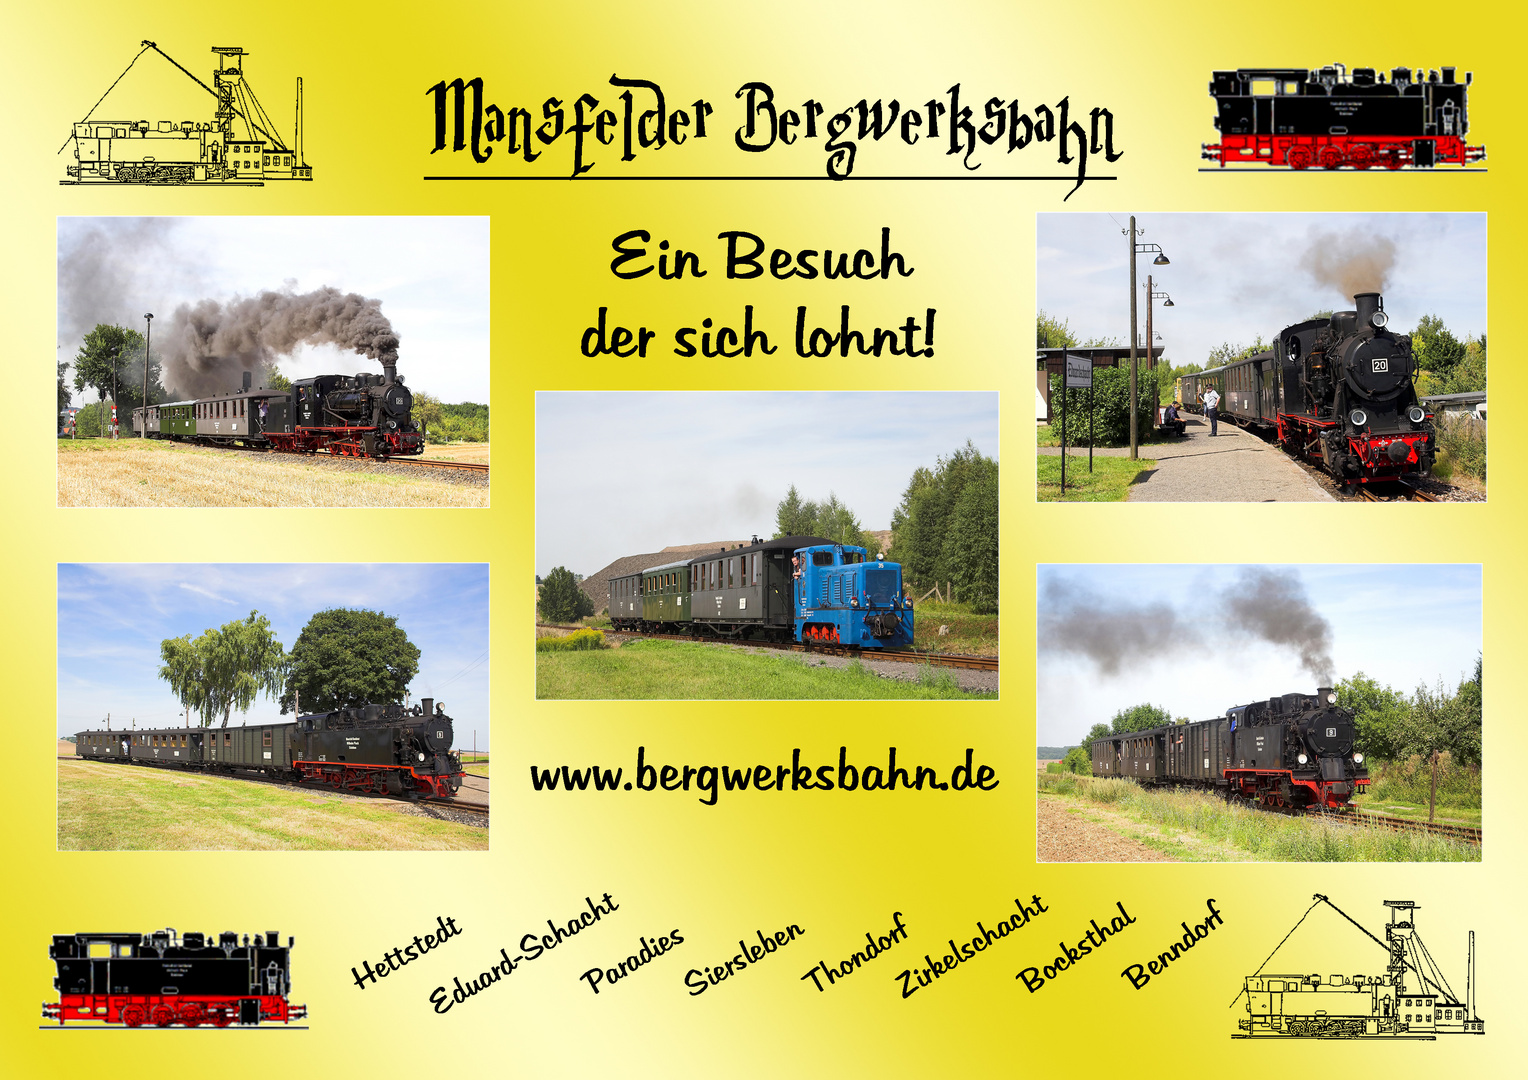 Mansfelder Bergwerksbahn